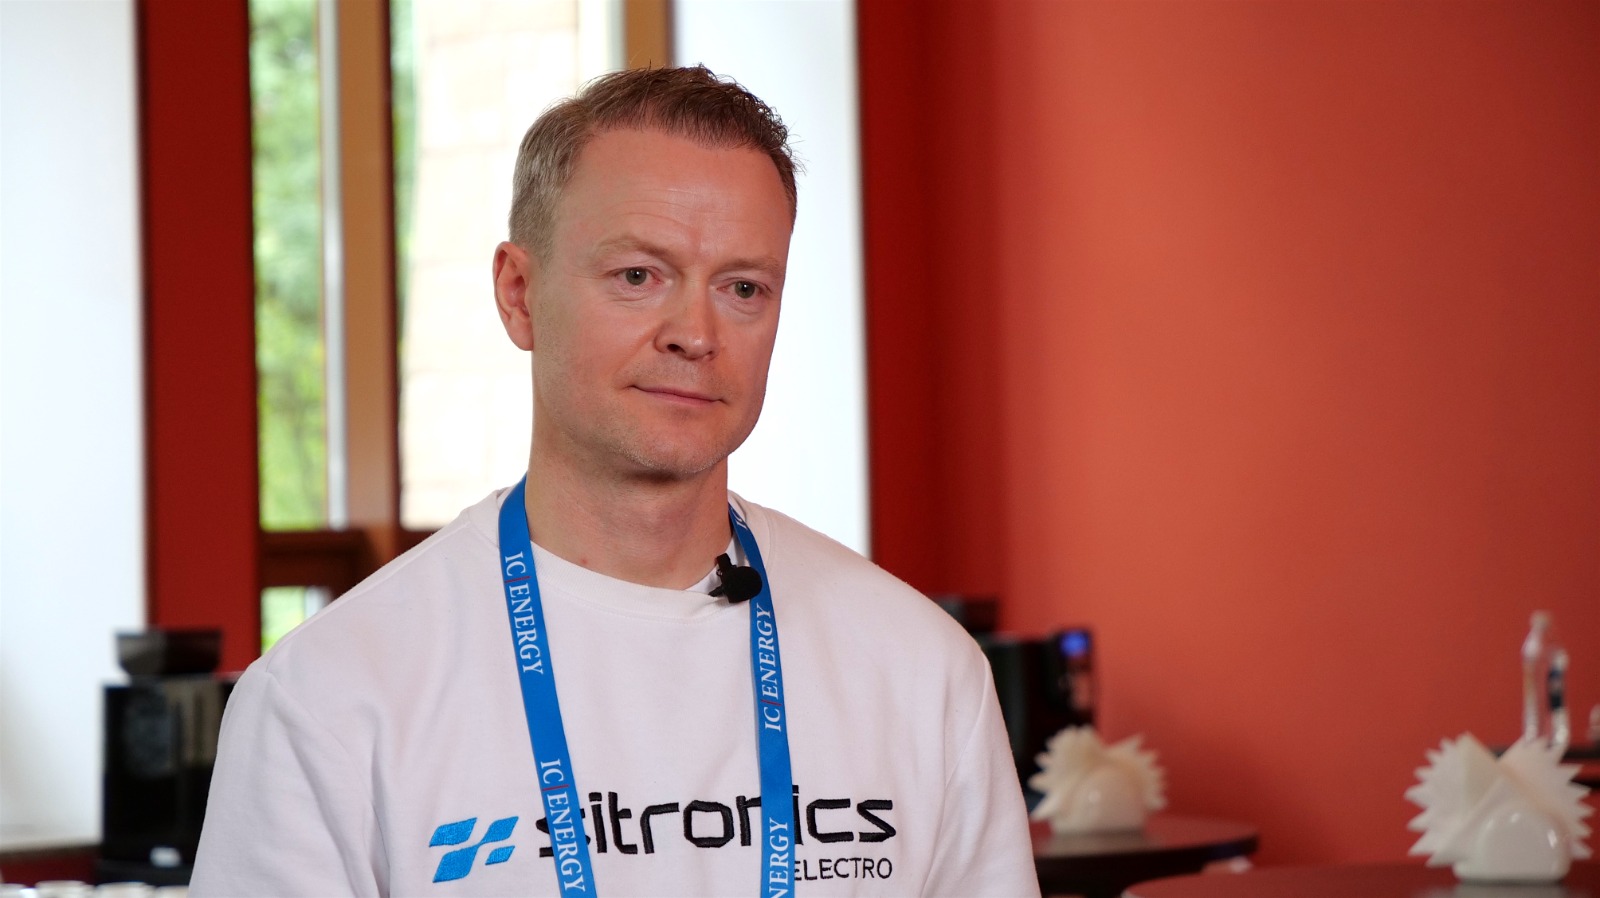 Генеральный директор российского оператора зарядной инфраструктуры Sitronics Electro Андрей Гурленов